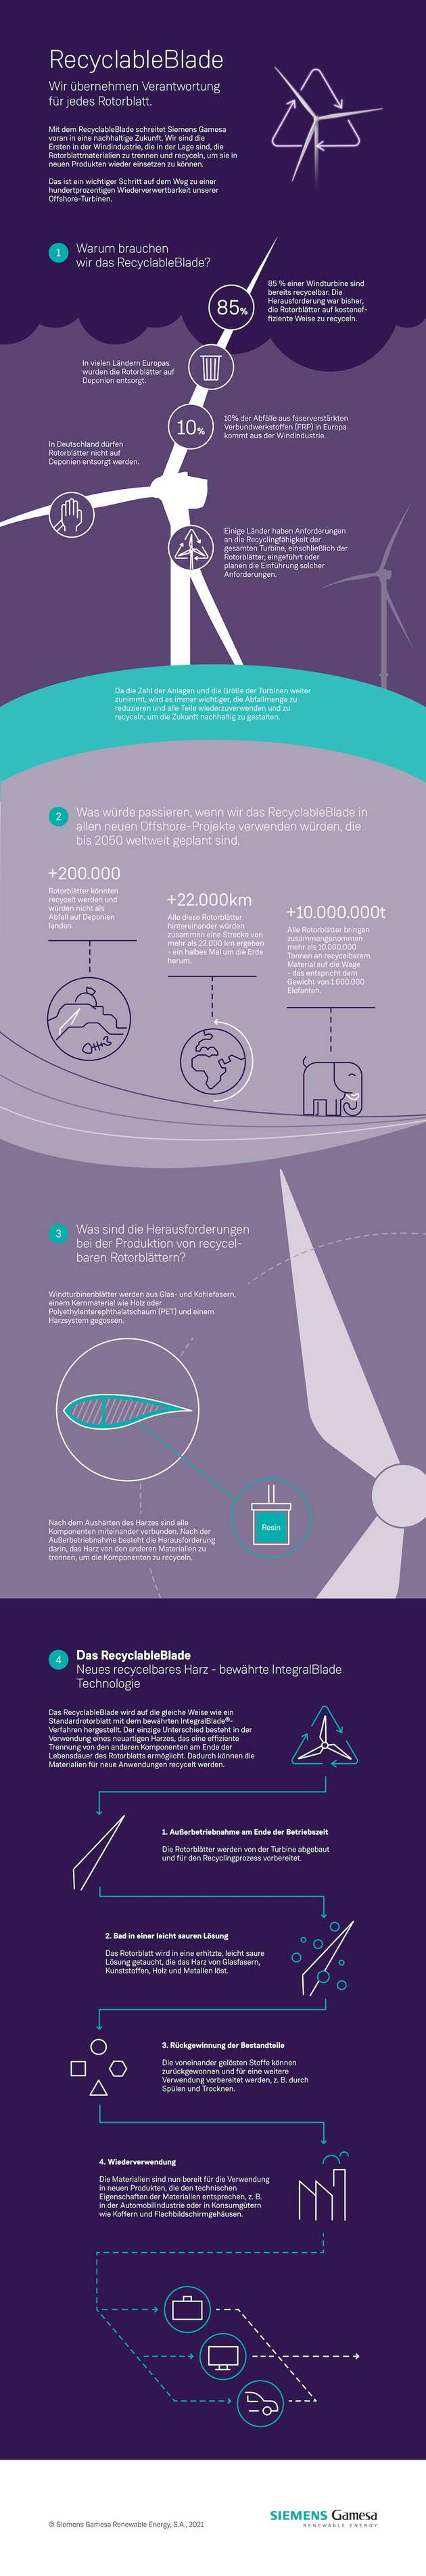 Infografik zu Siemens’ RecyclableBlade-Technologie